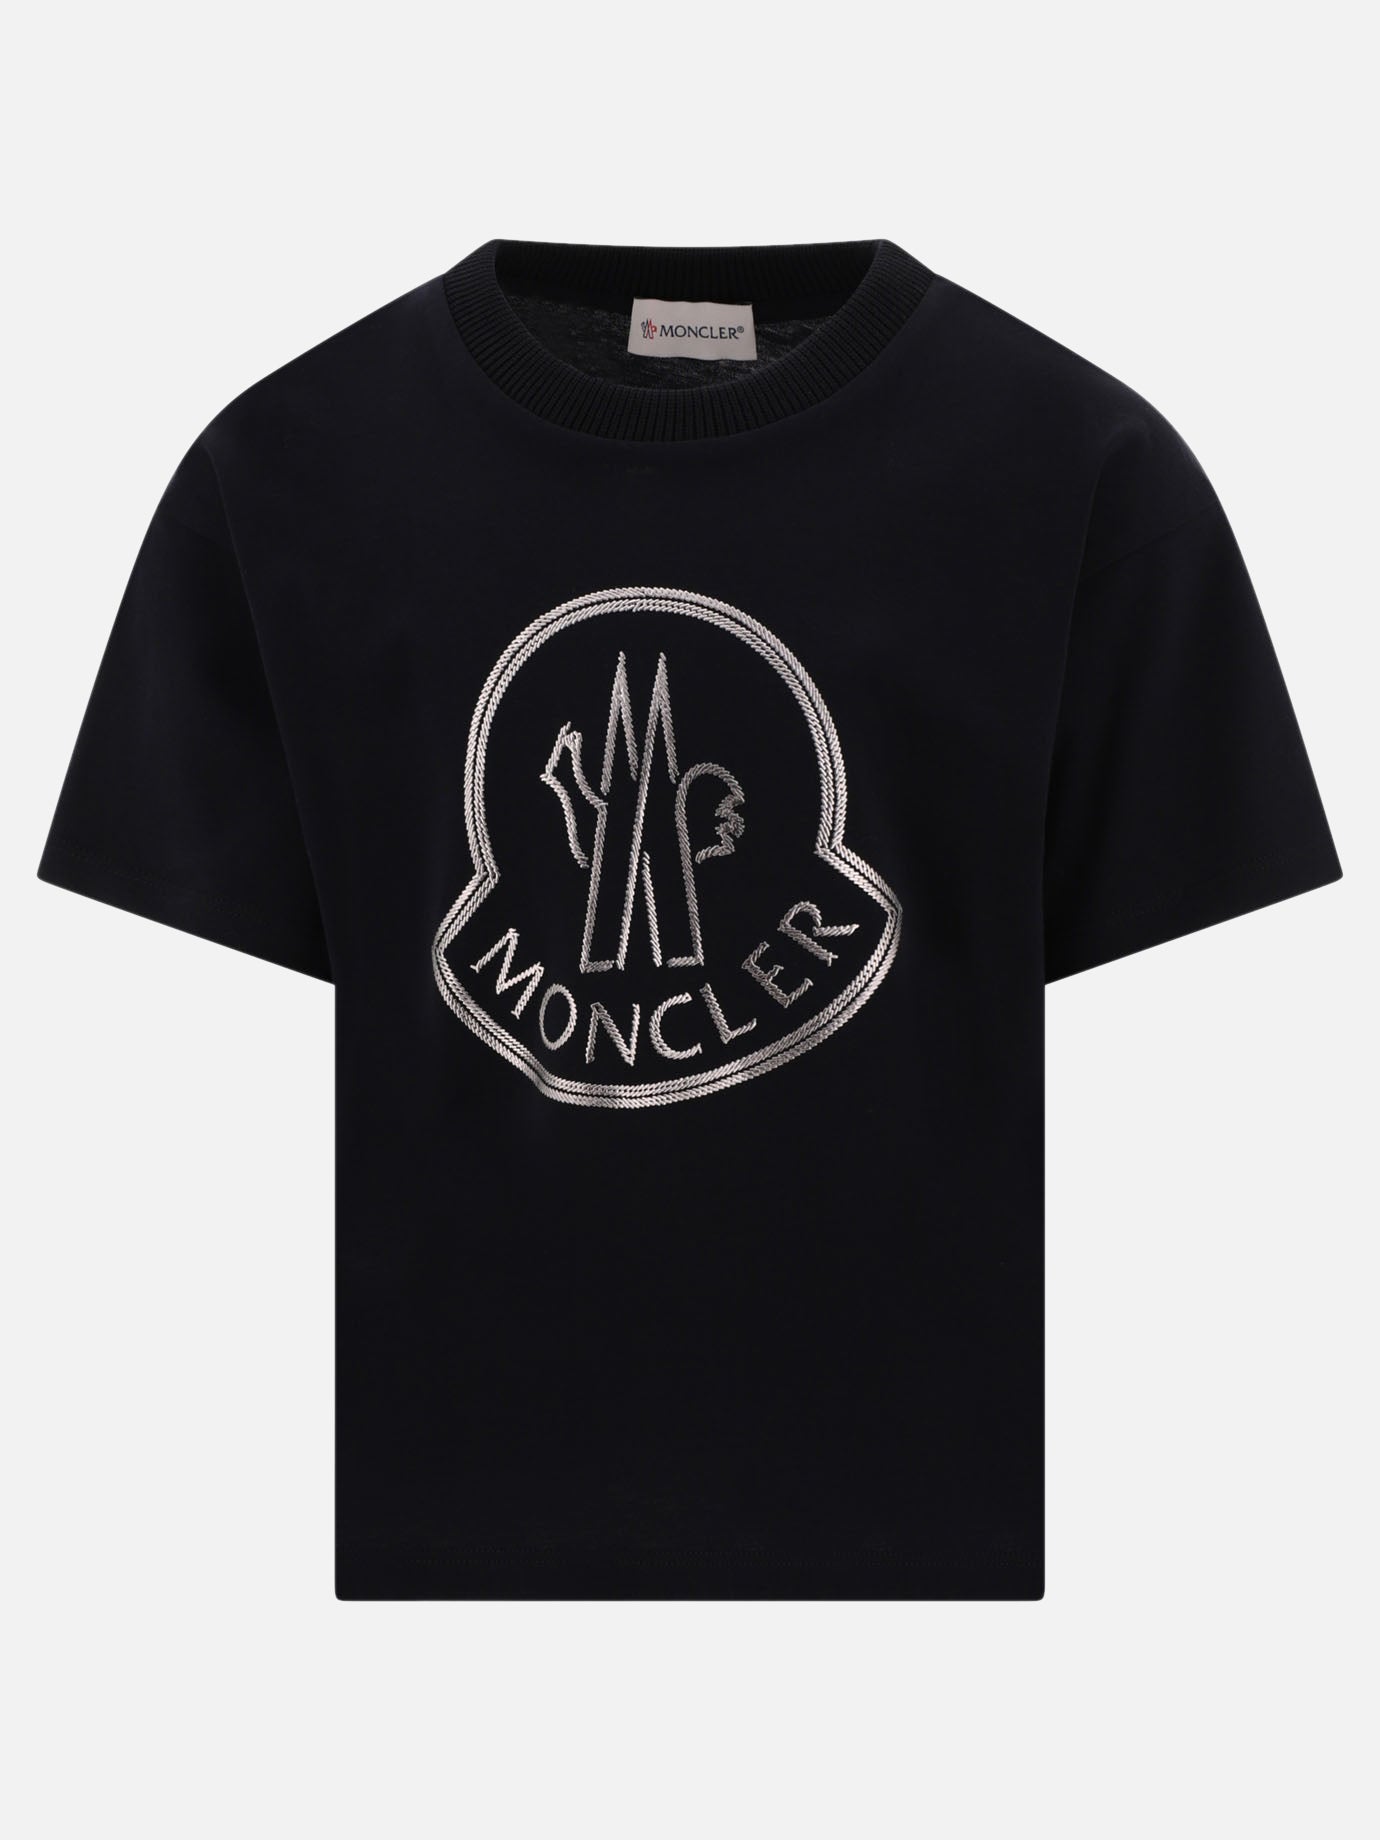 "Moncler" t-shirt